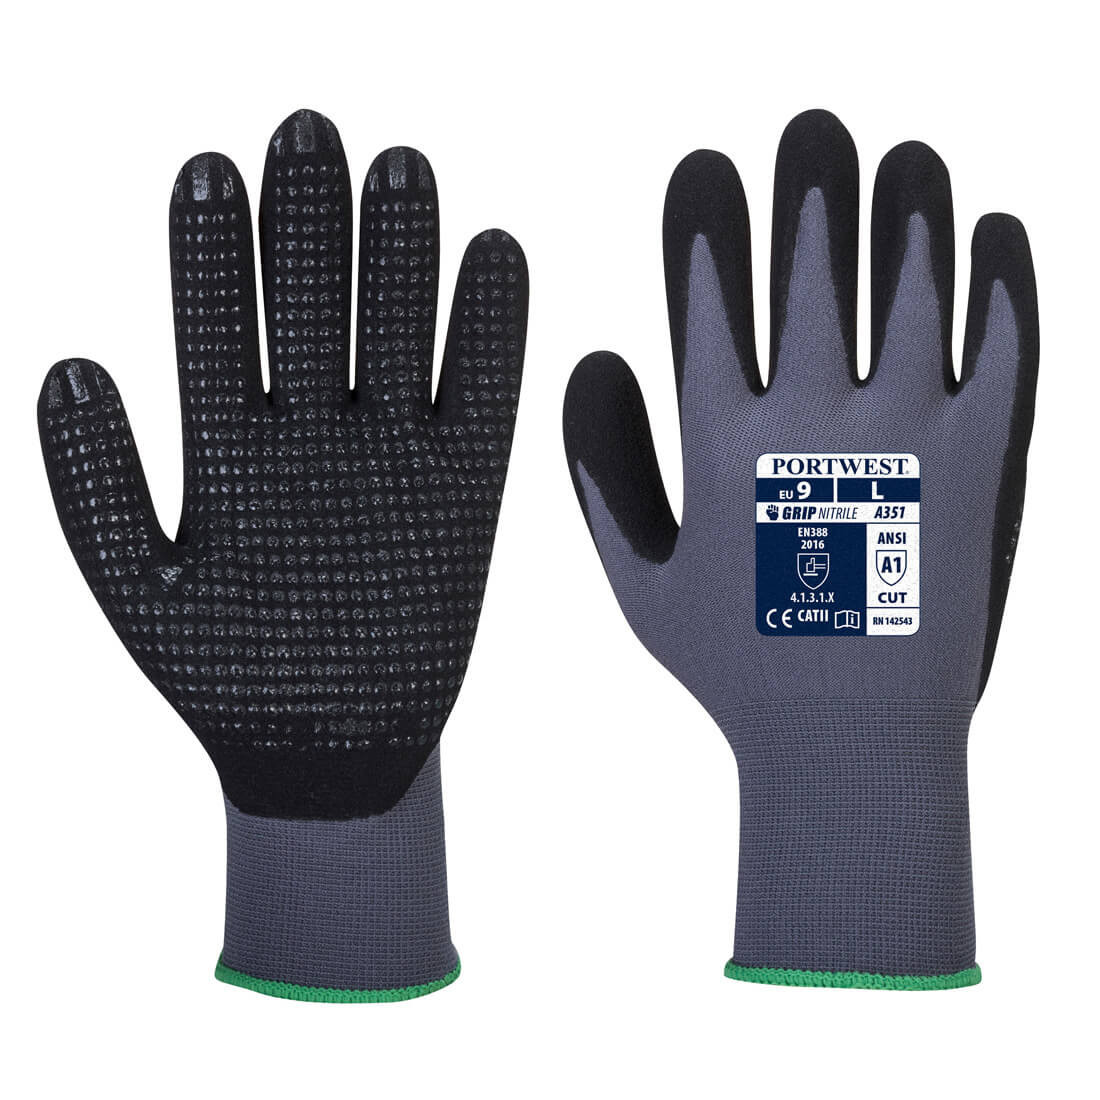 DermiFlex Plus Glove - Personal protection